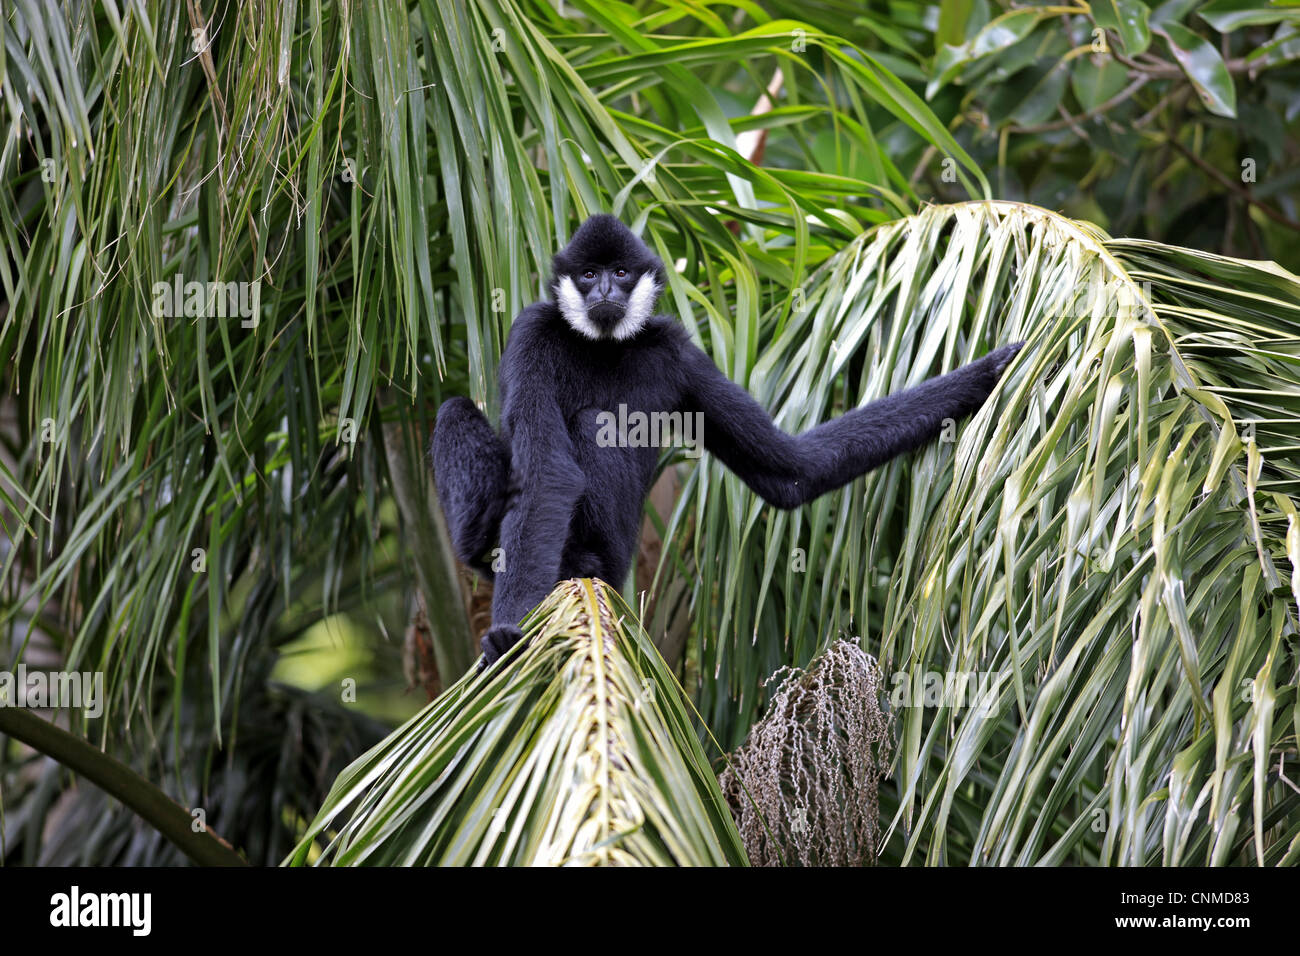 Gibbon à crête noire (Nomascus concolor) mâle adulte, assis sur des feuilles de palmier (captive) Banque D'Images